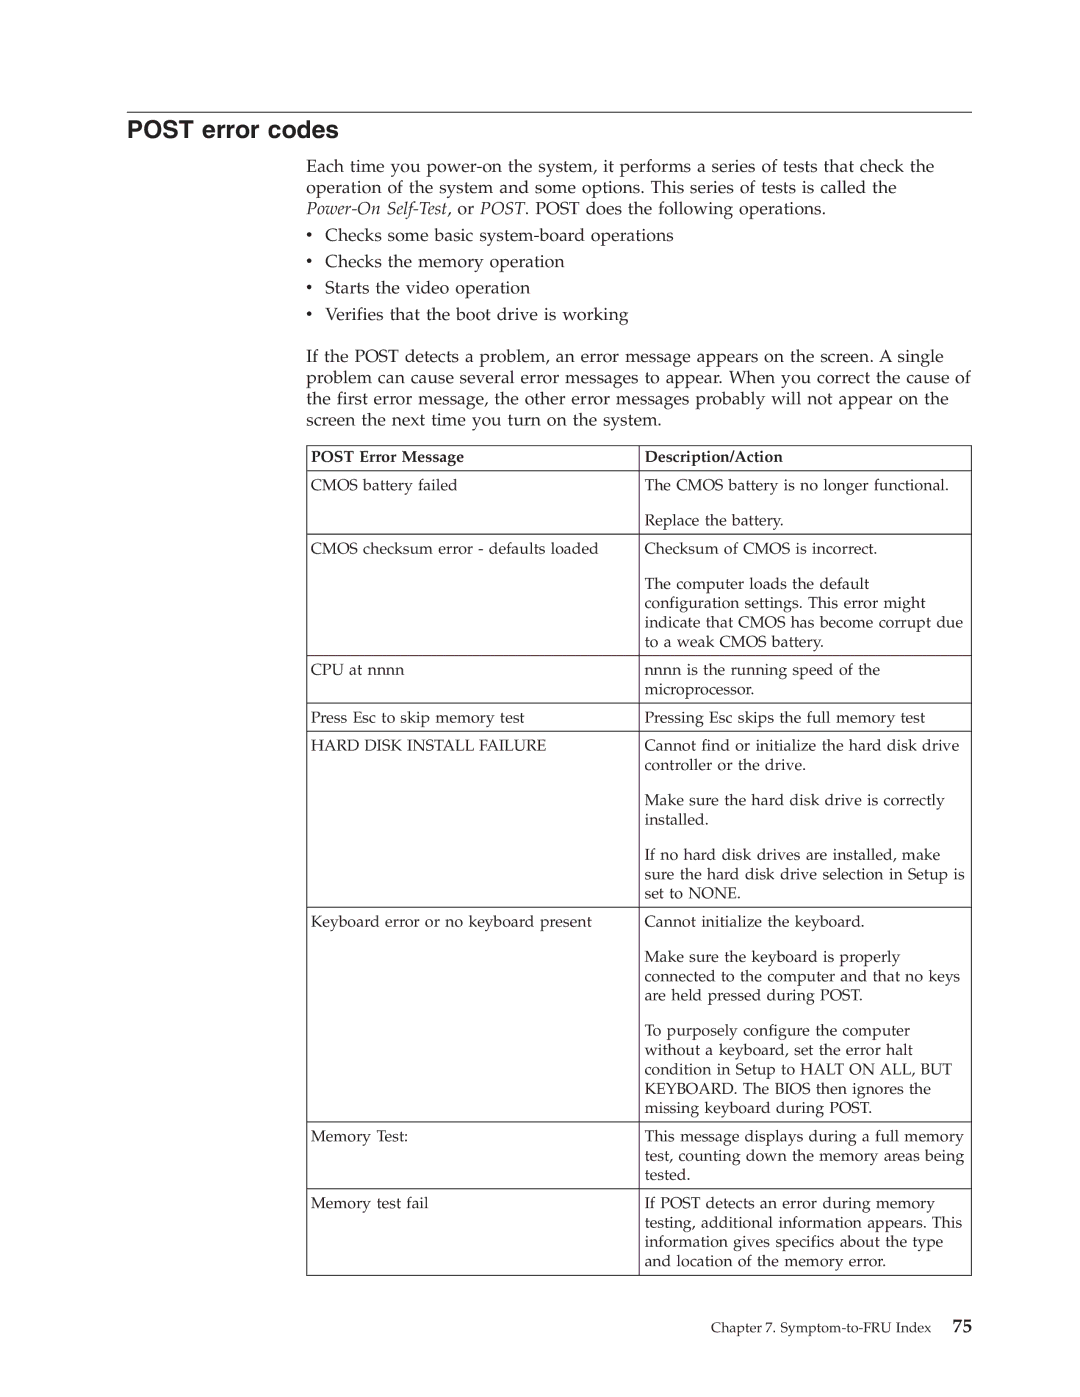 Lenovo E200 manual Post error codes, Post Error Message Description/Action 